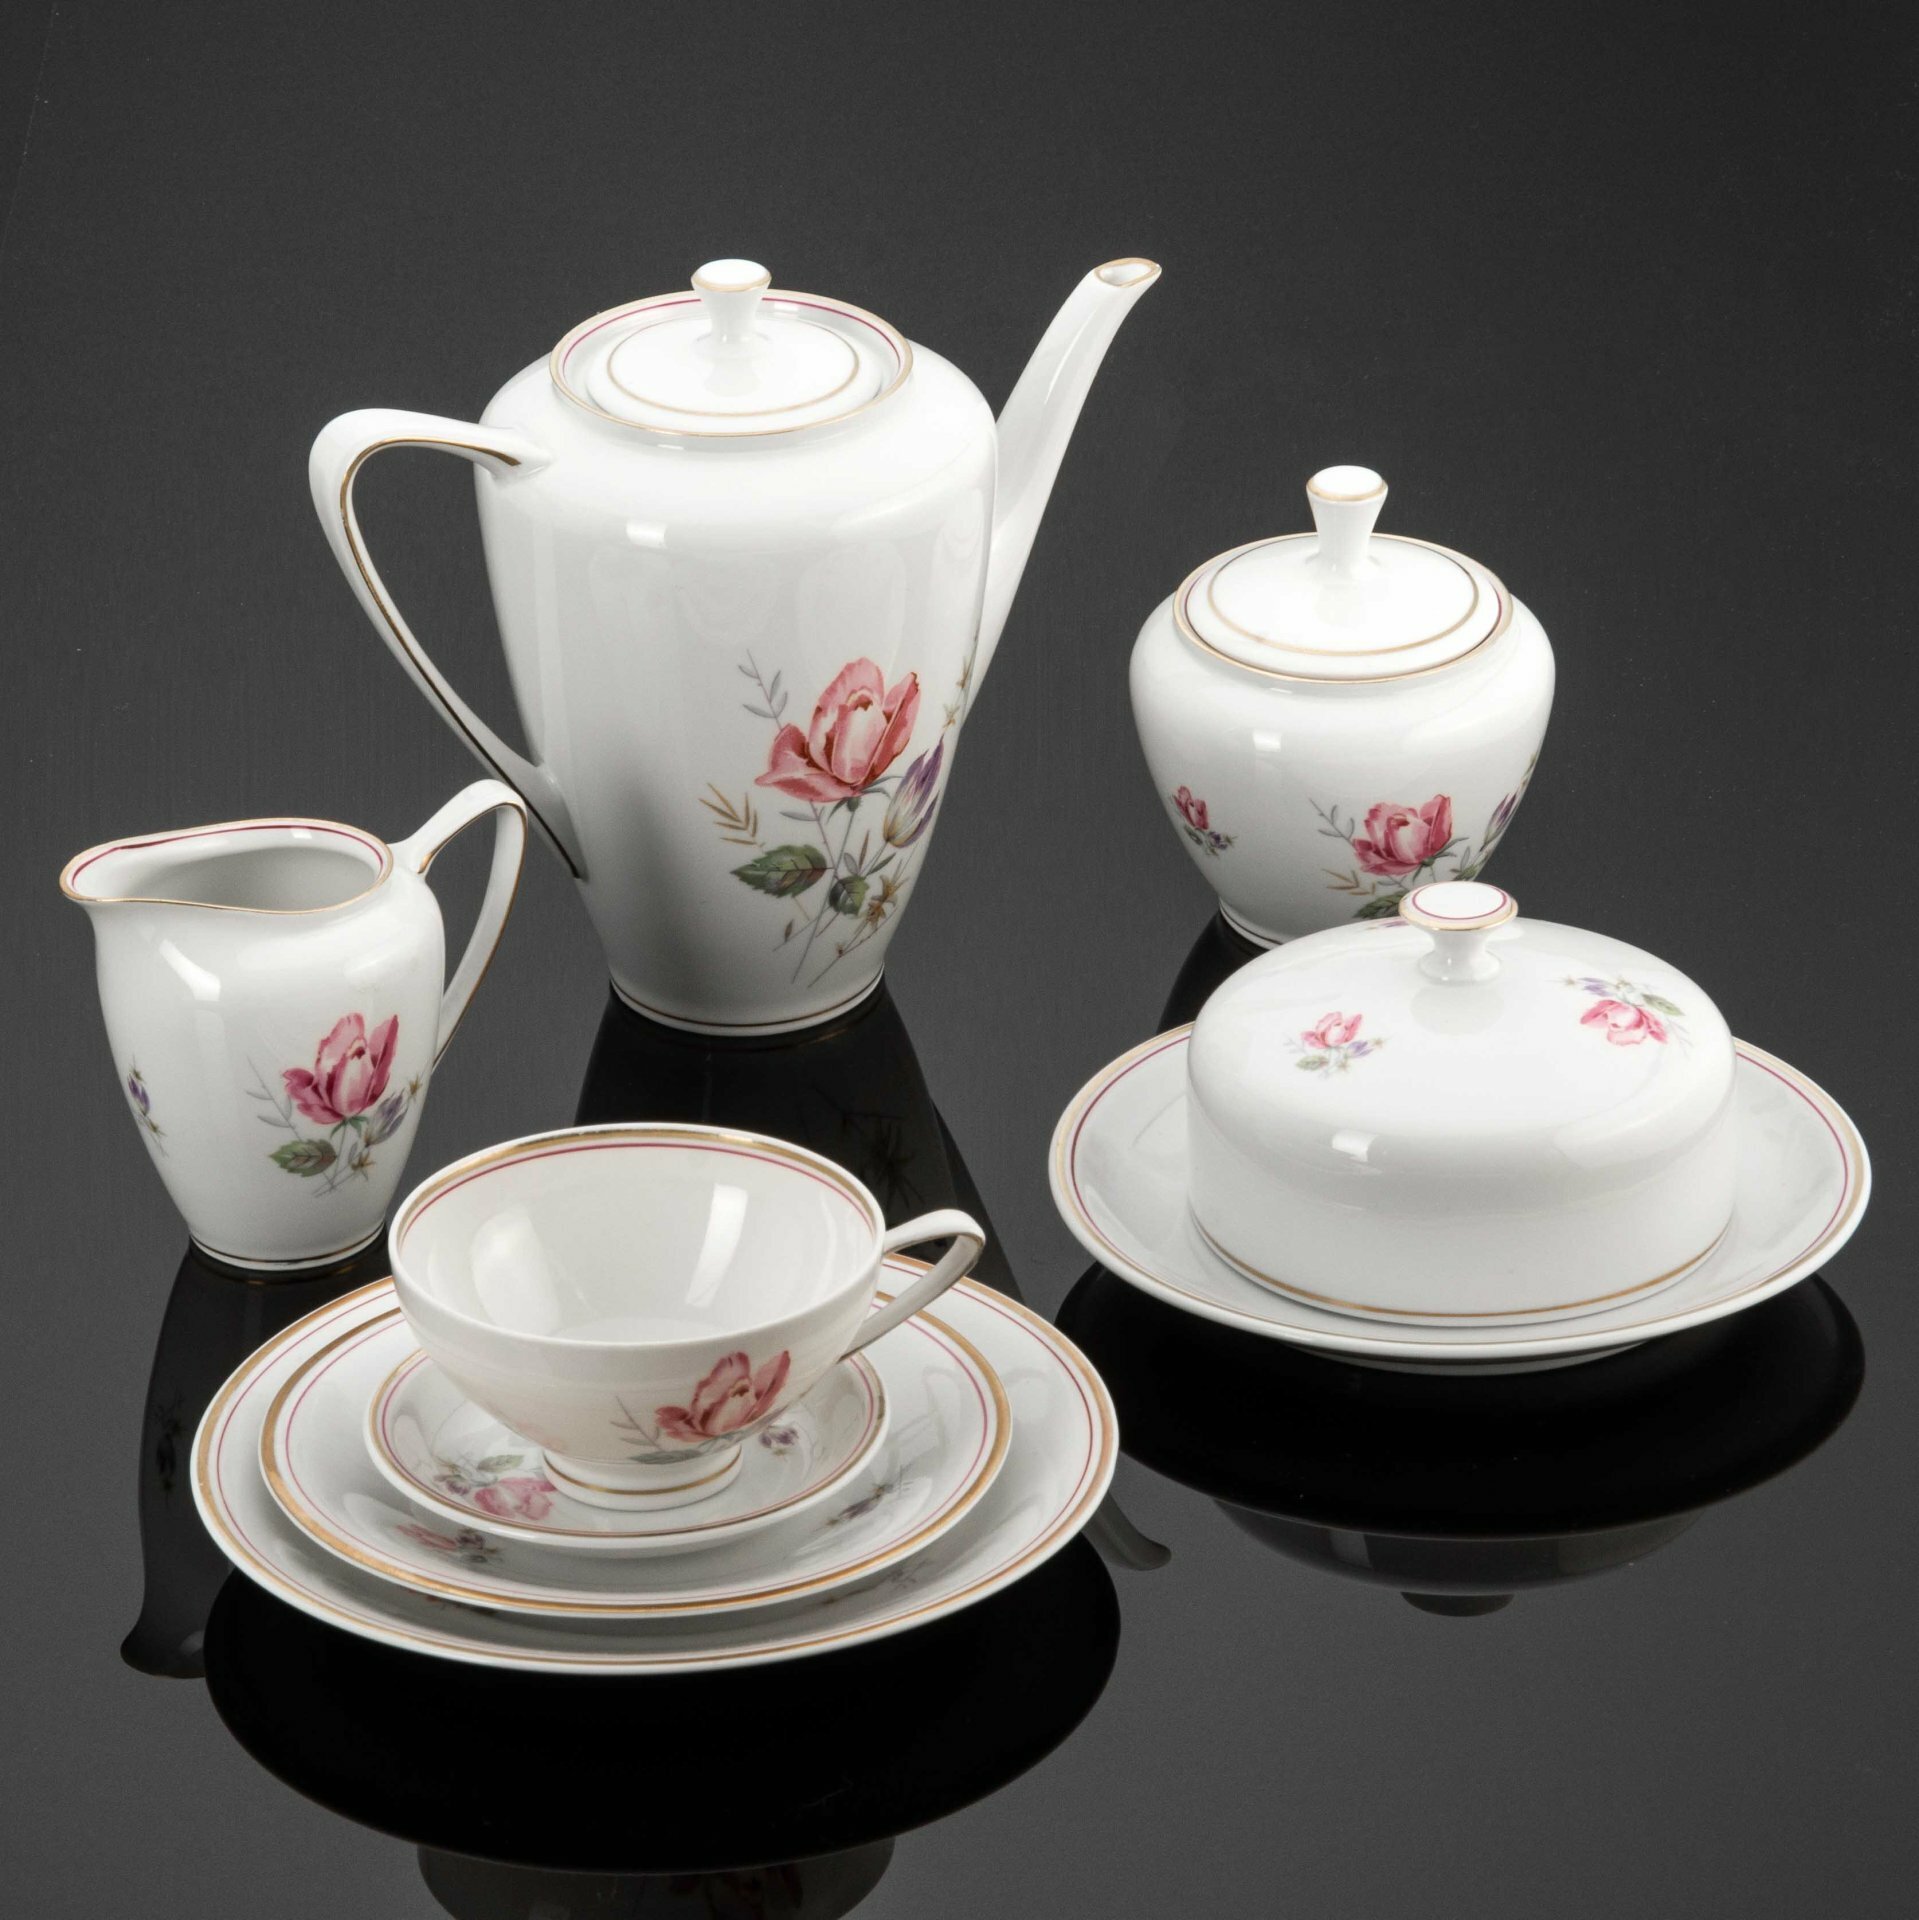 Сервиз чайный на одну персону с нежным цветочным декором (8 предметов), фарфор